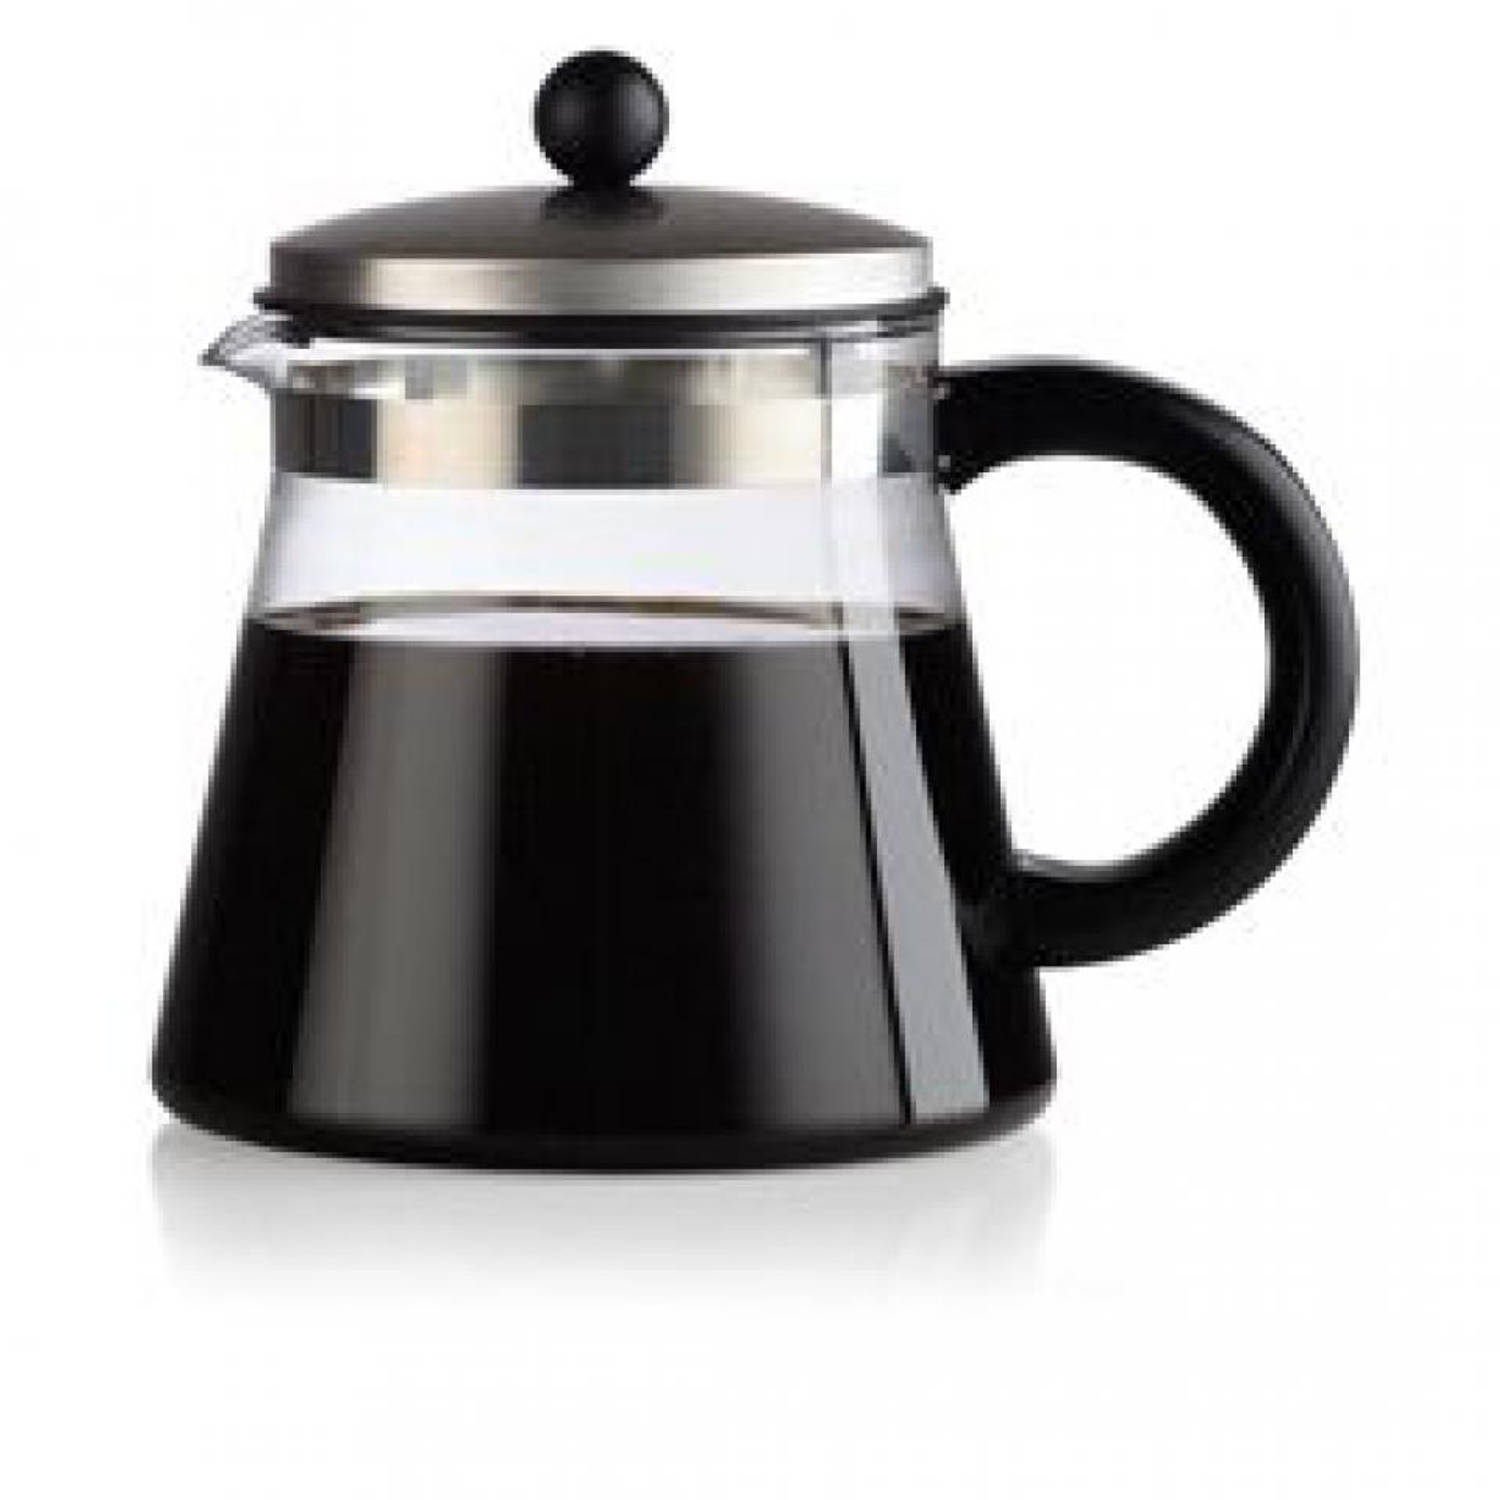 Treinstation Dubbelzinnig Voor u Randwyck Manhattan thee-/koffiepot - 1,5 liter - zwart | Blokker